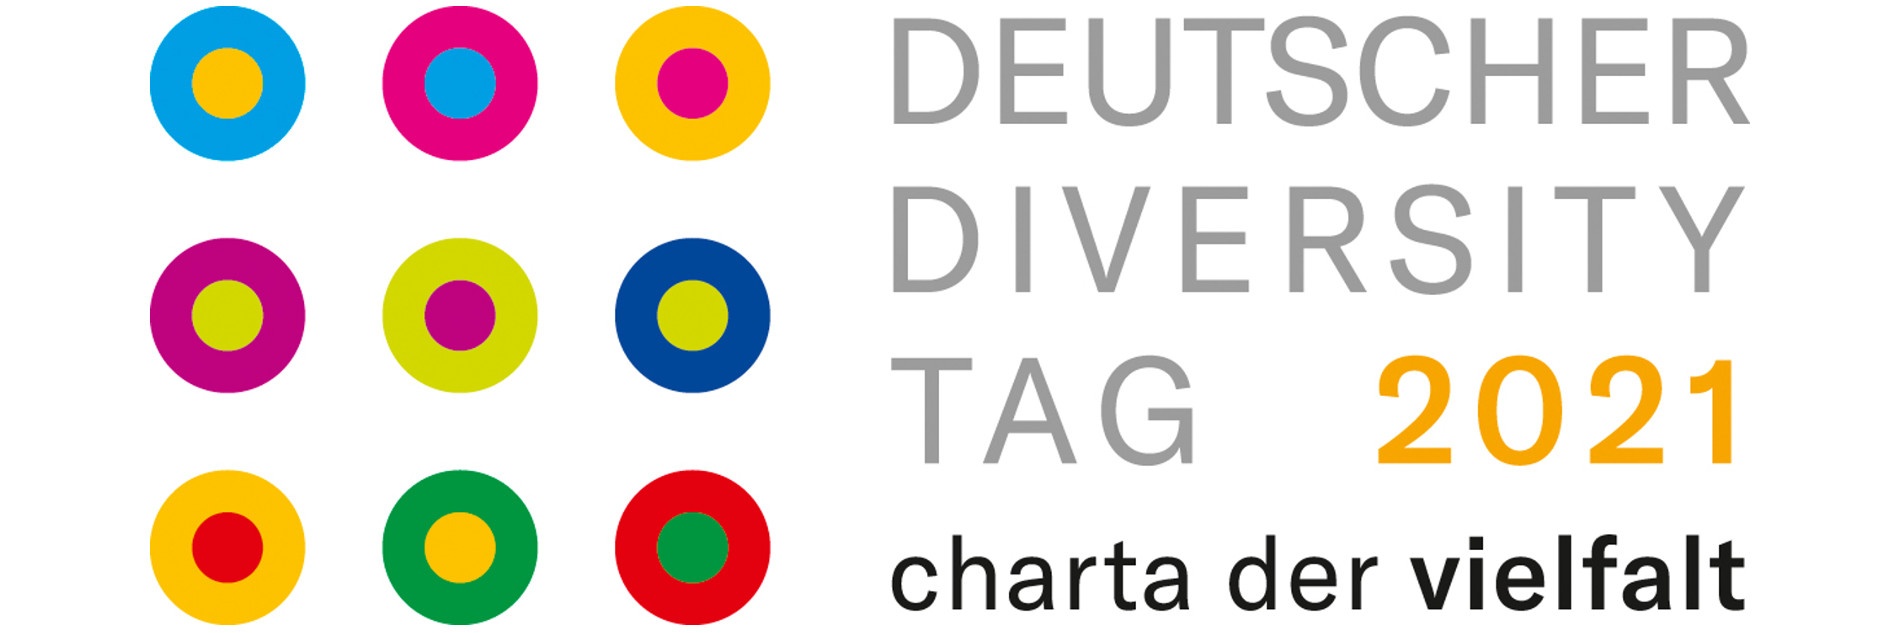 Das Logo des Deutschen Diversity-Tages: 9 bunte Punkte mit jeweils einem andersfarbigem Kreis drum. Daneben ein "Deutscher Diversity-Tag 2021 - charta der vielfalt"-Schriftzug.